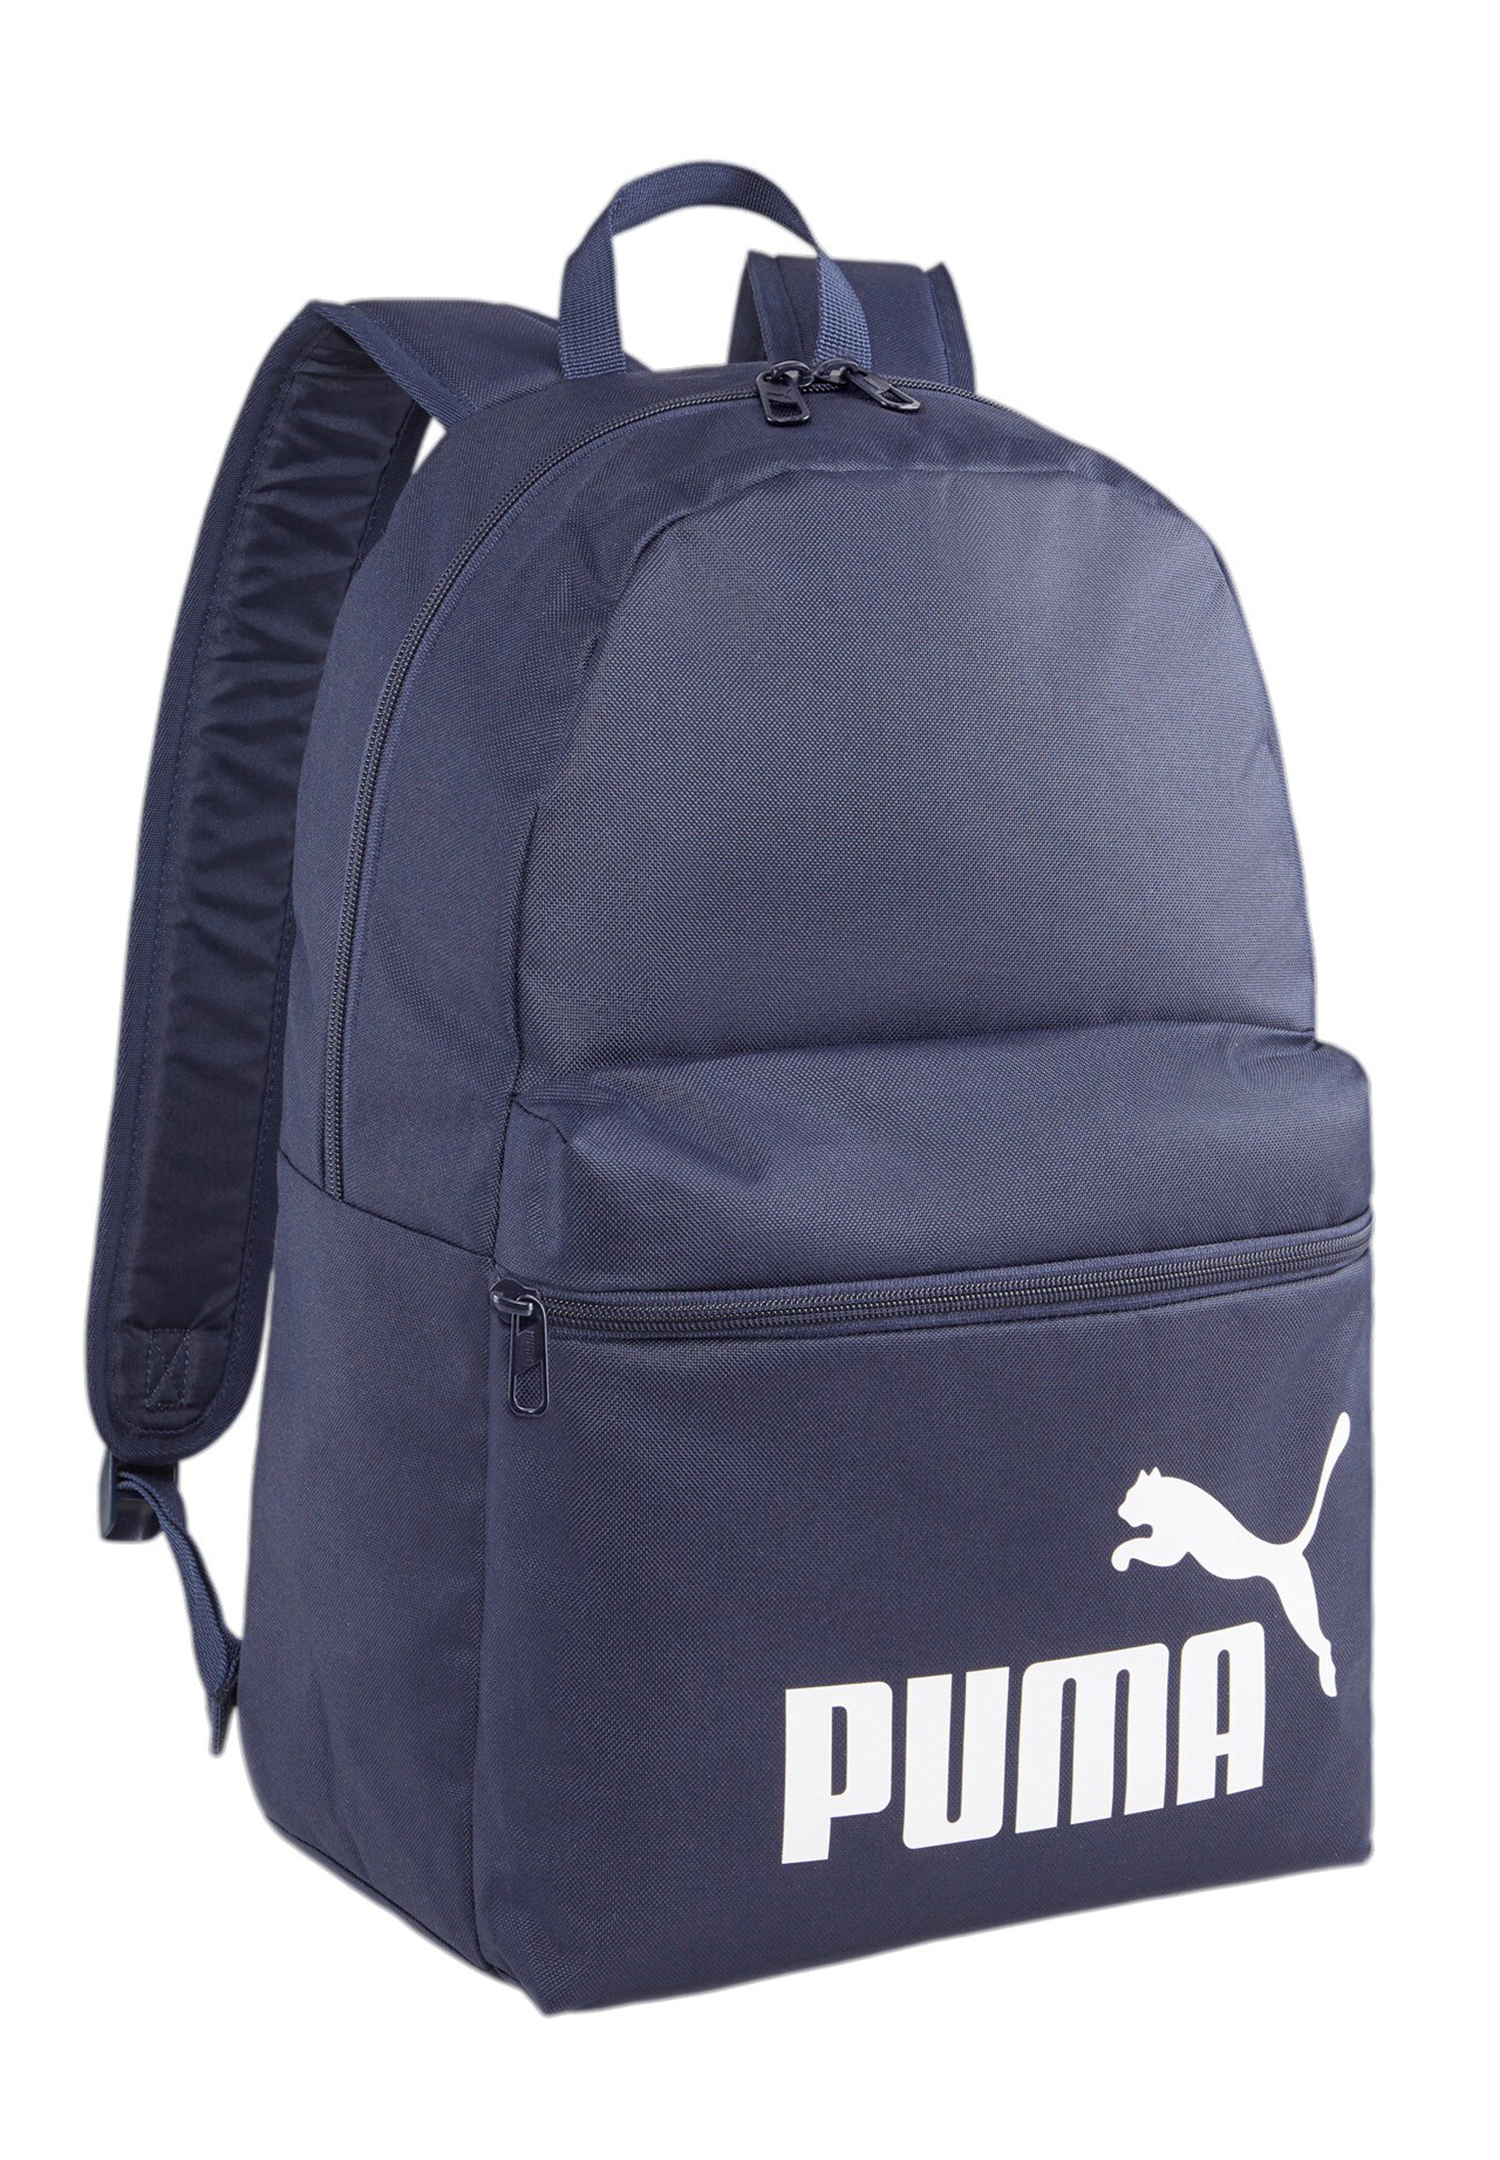 PUMA Phase Backpack Rucksack Sport Freizeit Reise Schule 079943 02 navy